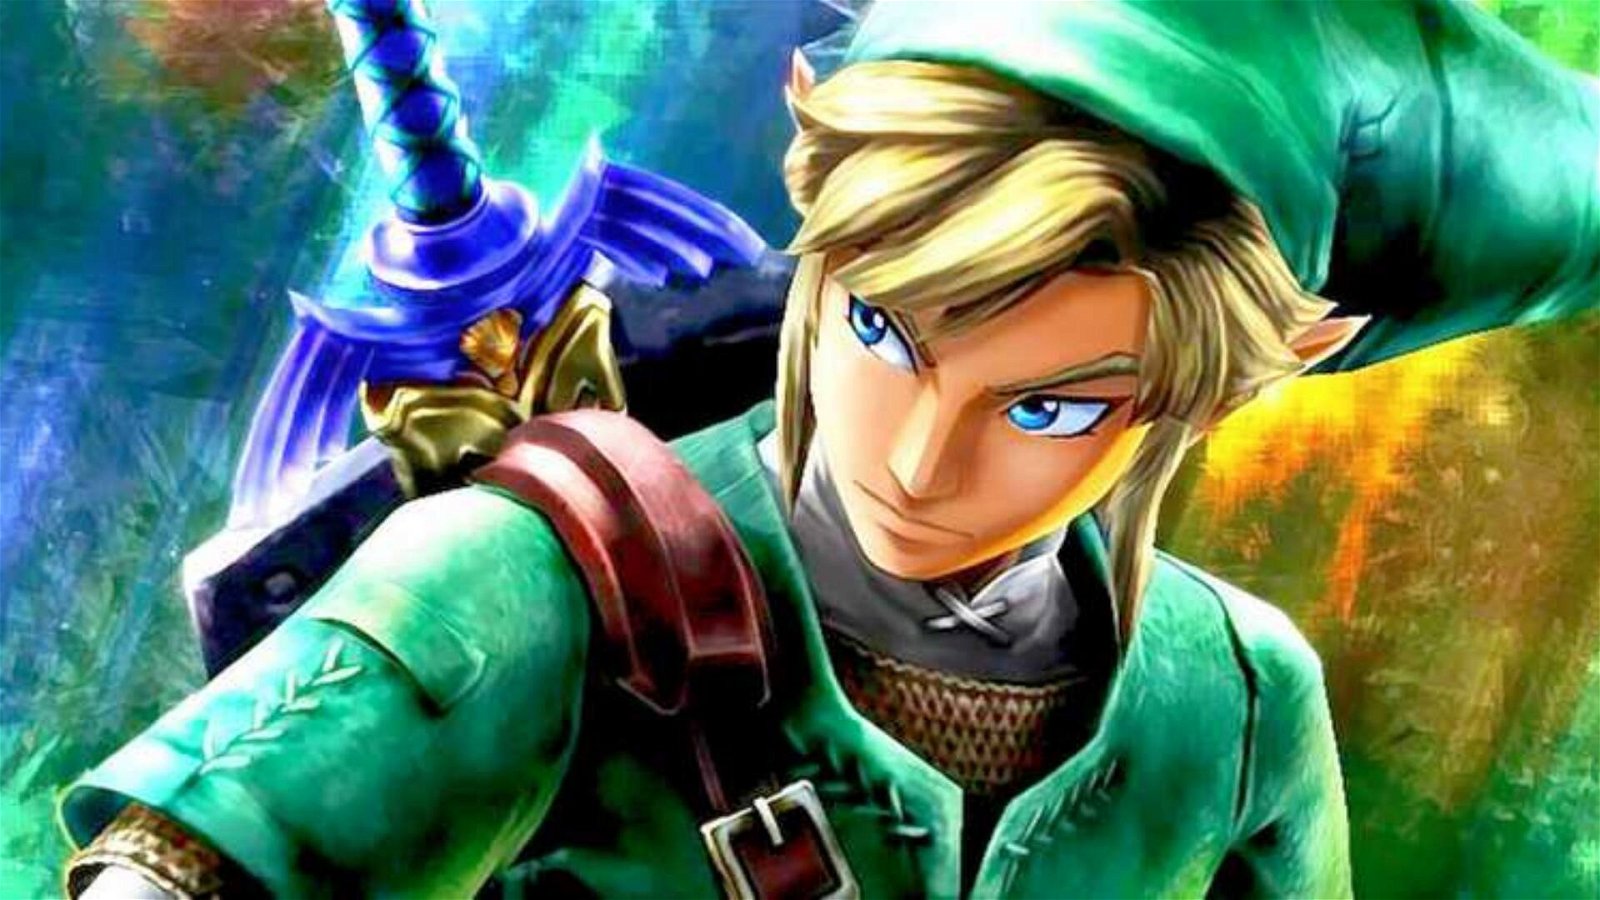 Immagine di The Legend of Zelda, copia sigillata emerge dalla soffitta e setta un nuovo record